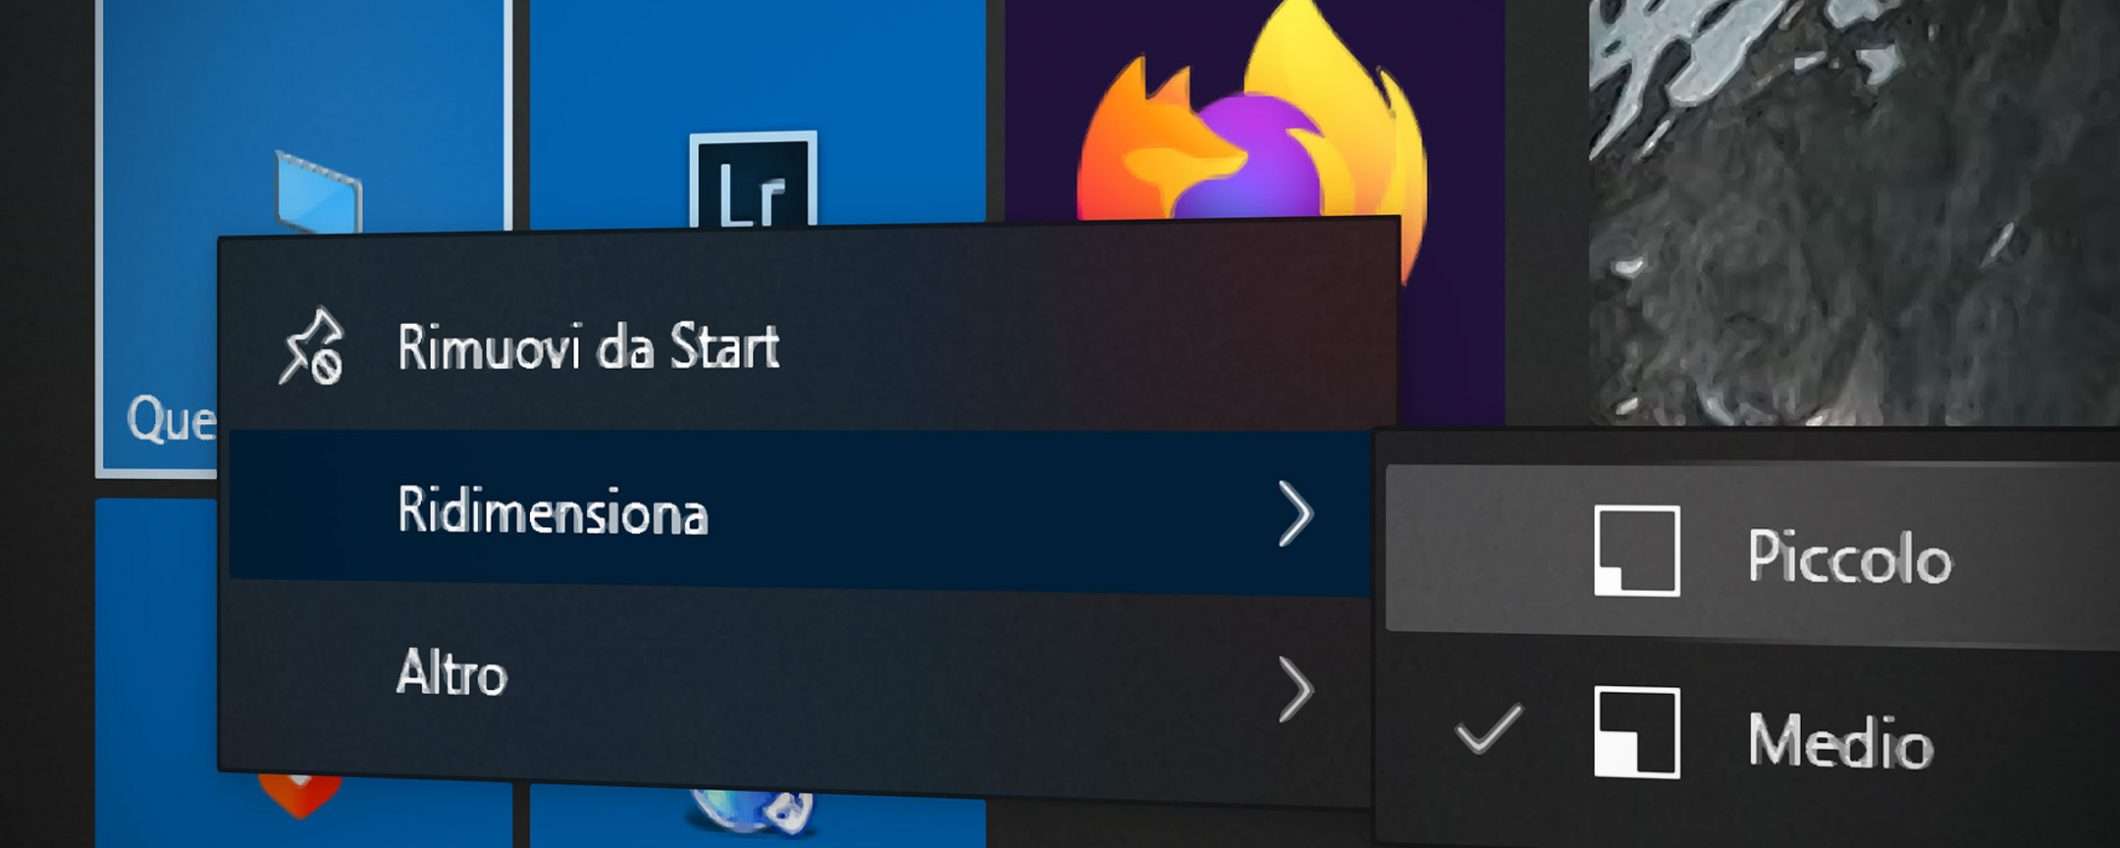 Windows 10: addio alle Live Tile nel menu Start?